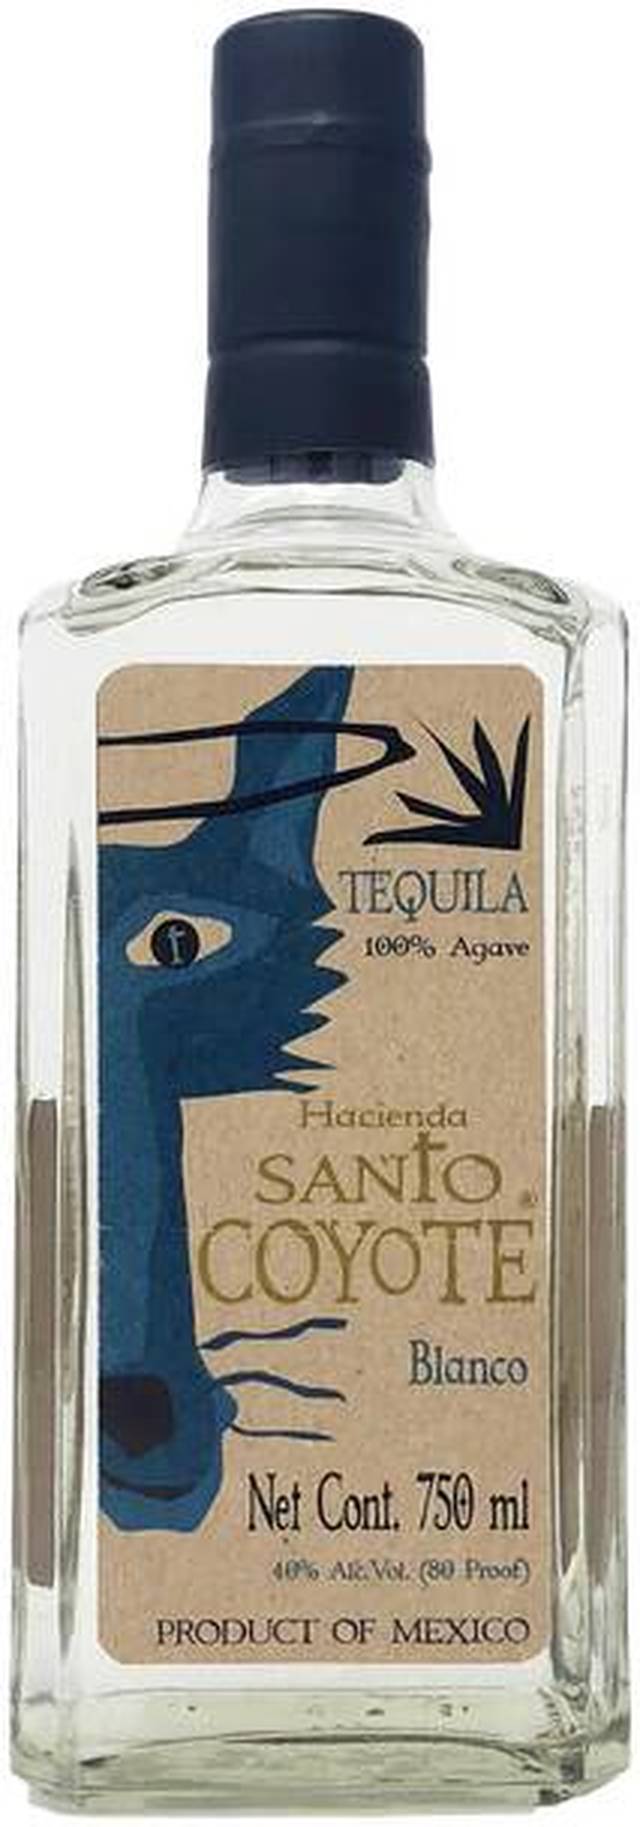 Hacienda Santo Coyote Blanco Tequila